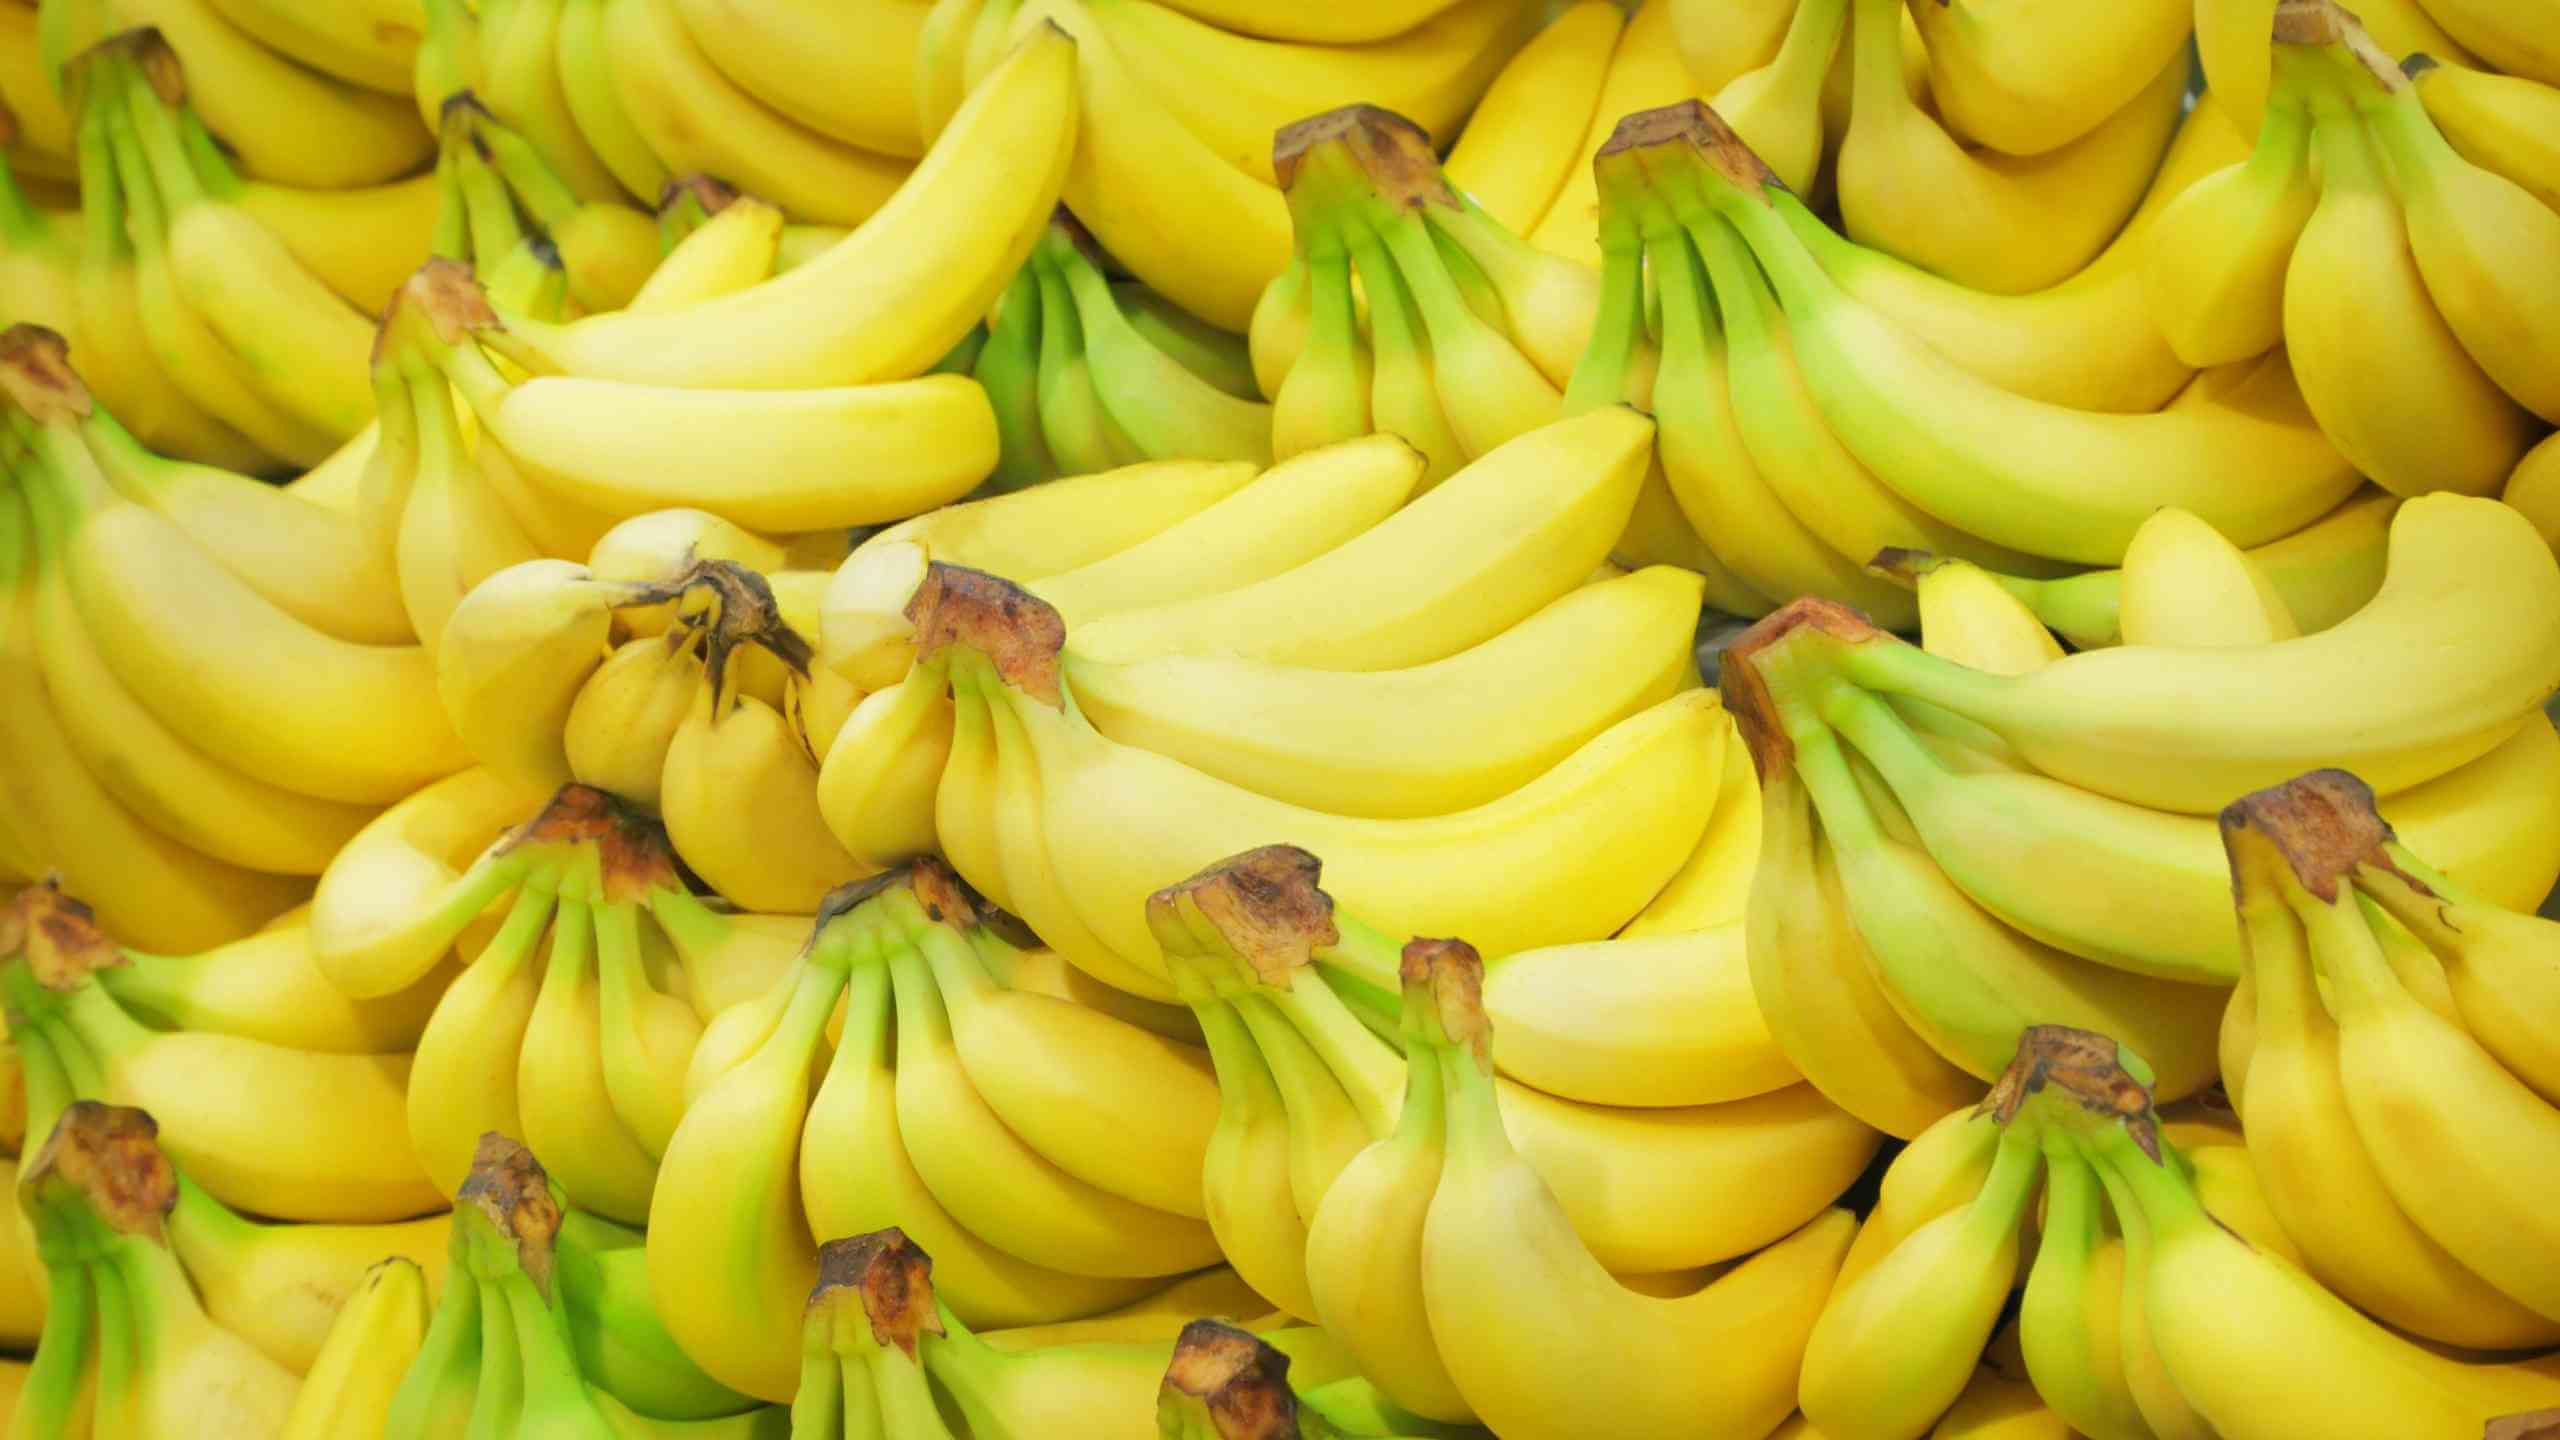 香蕉中含有丰富的营养成分